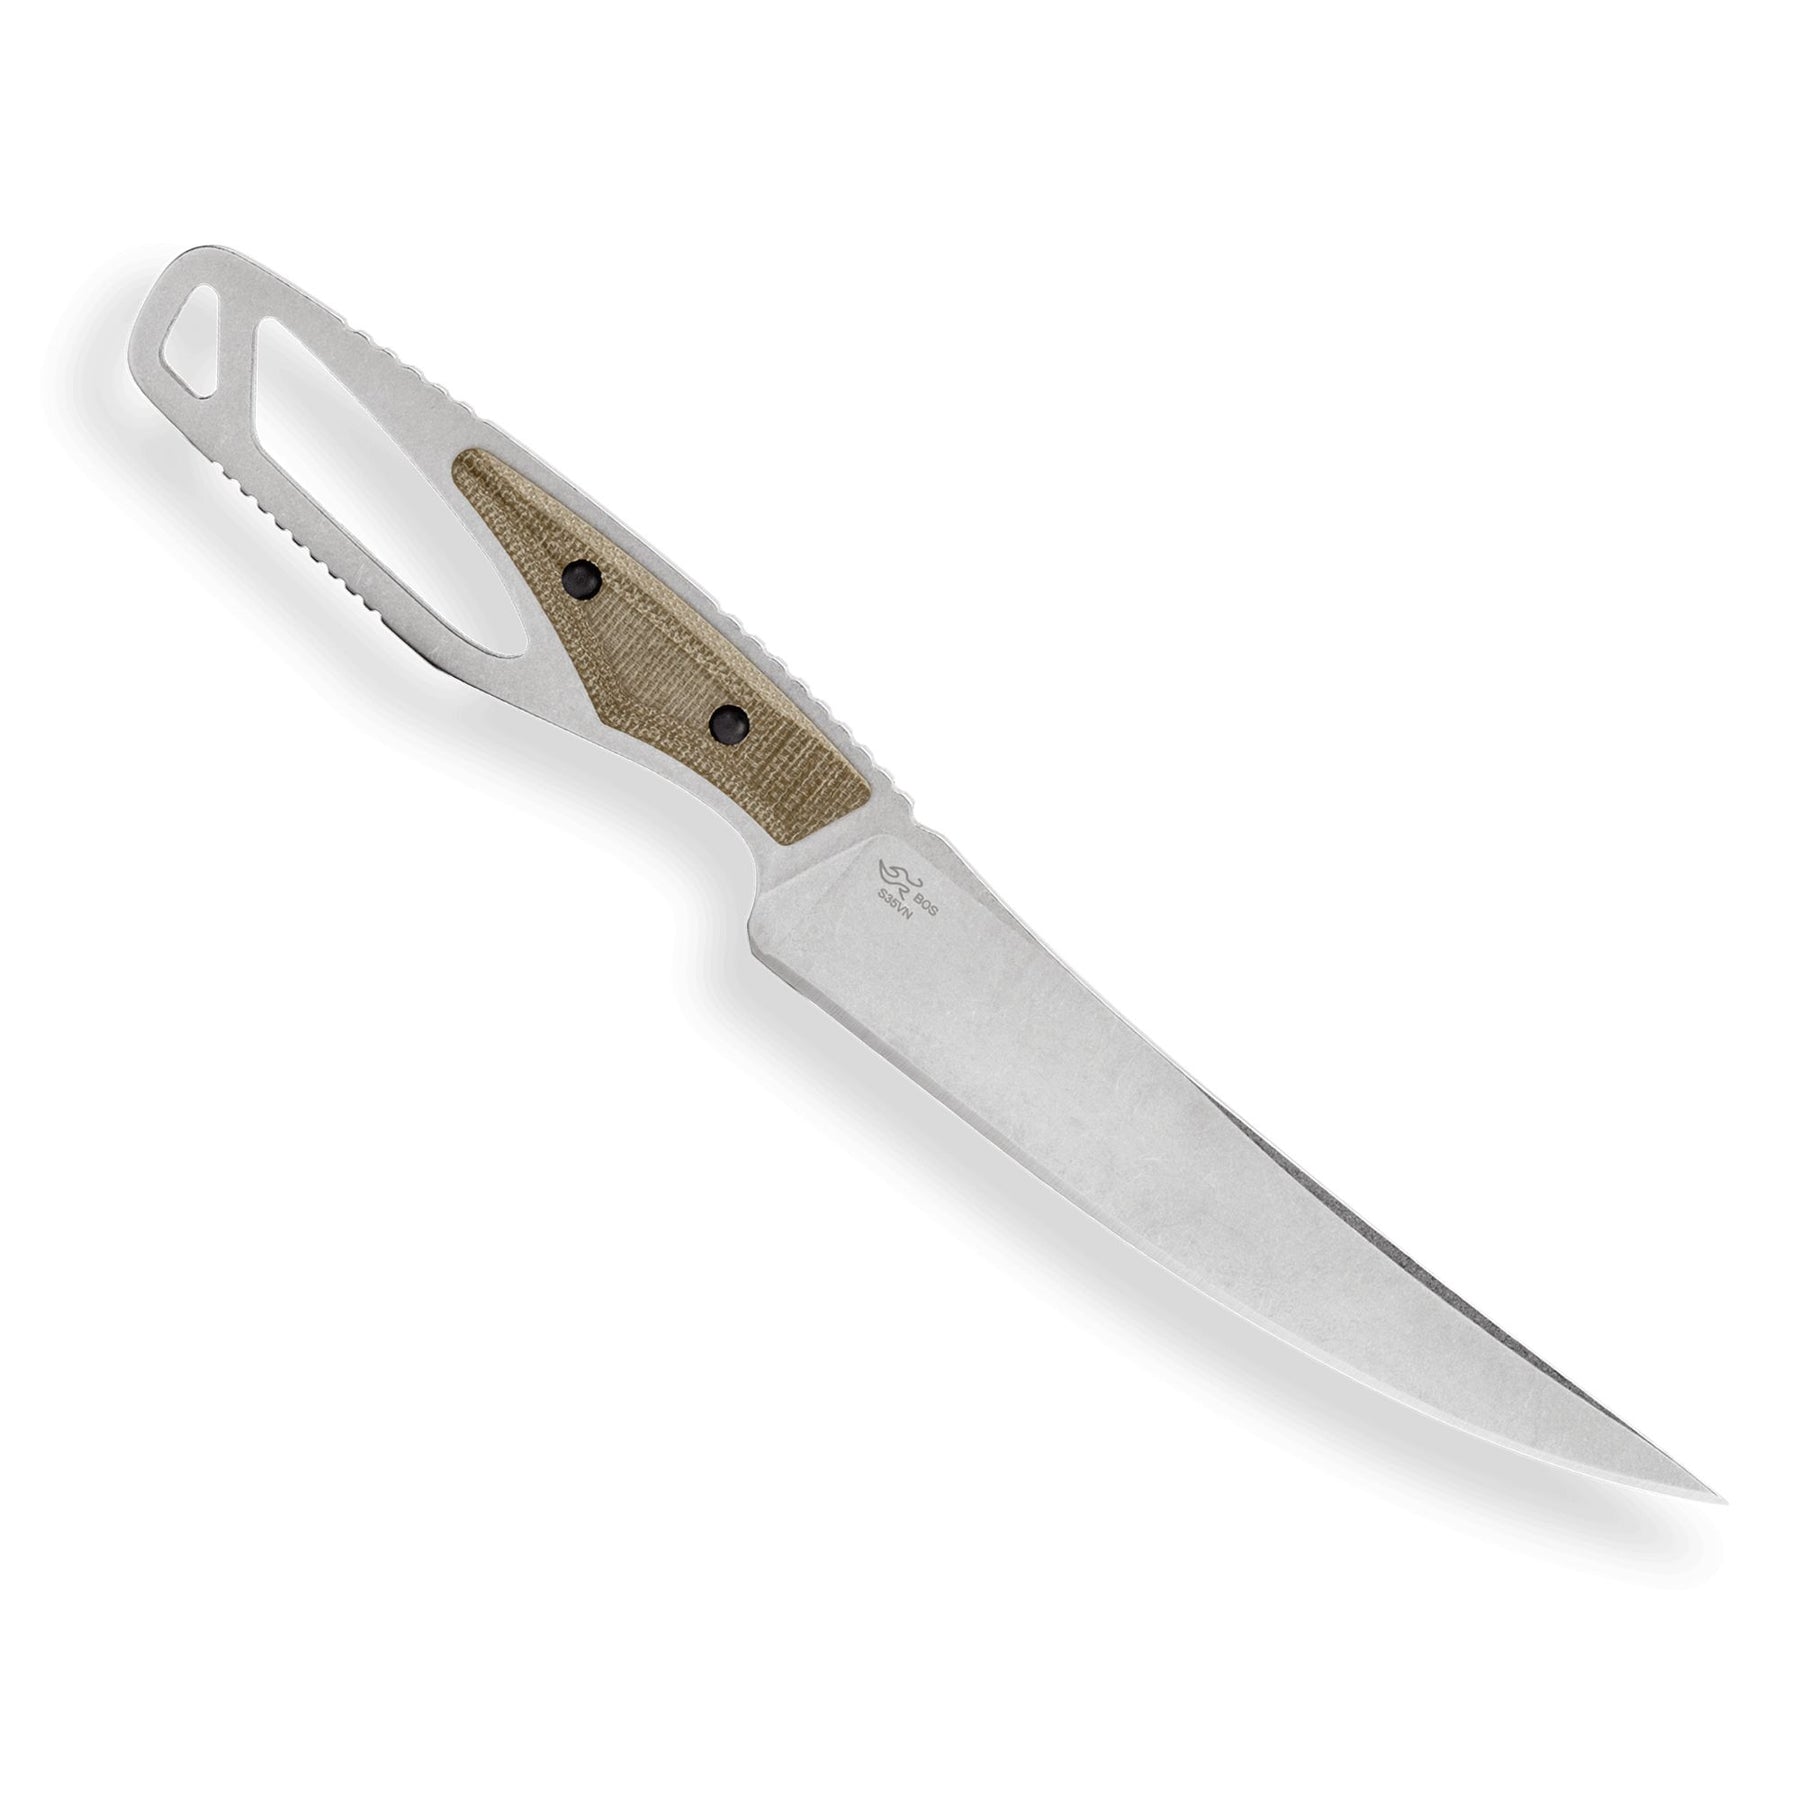 BUCK | 636 PAKLITE PROCESSOR KNIFE - Coltello a lama fissa